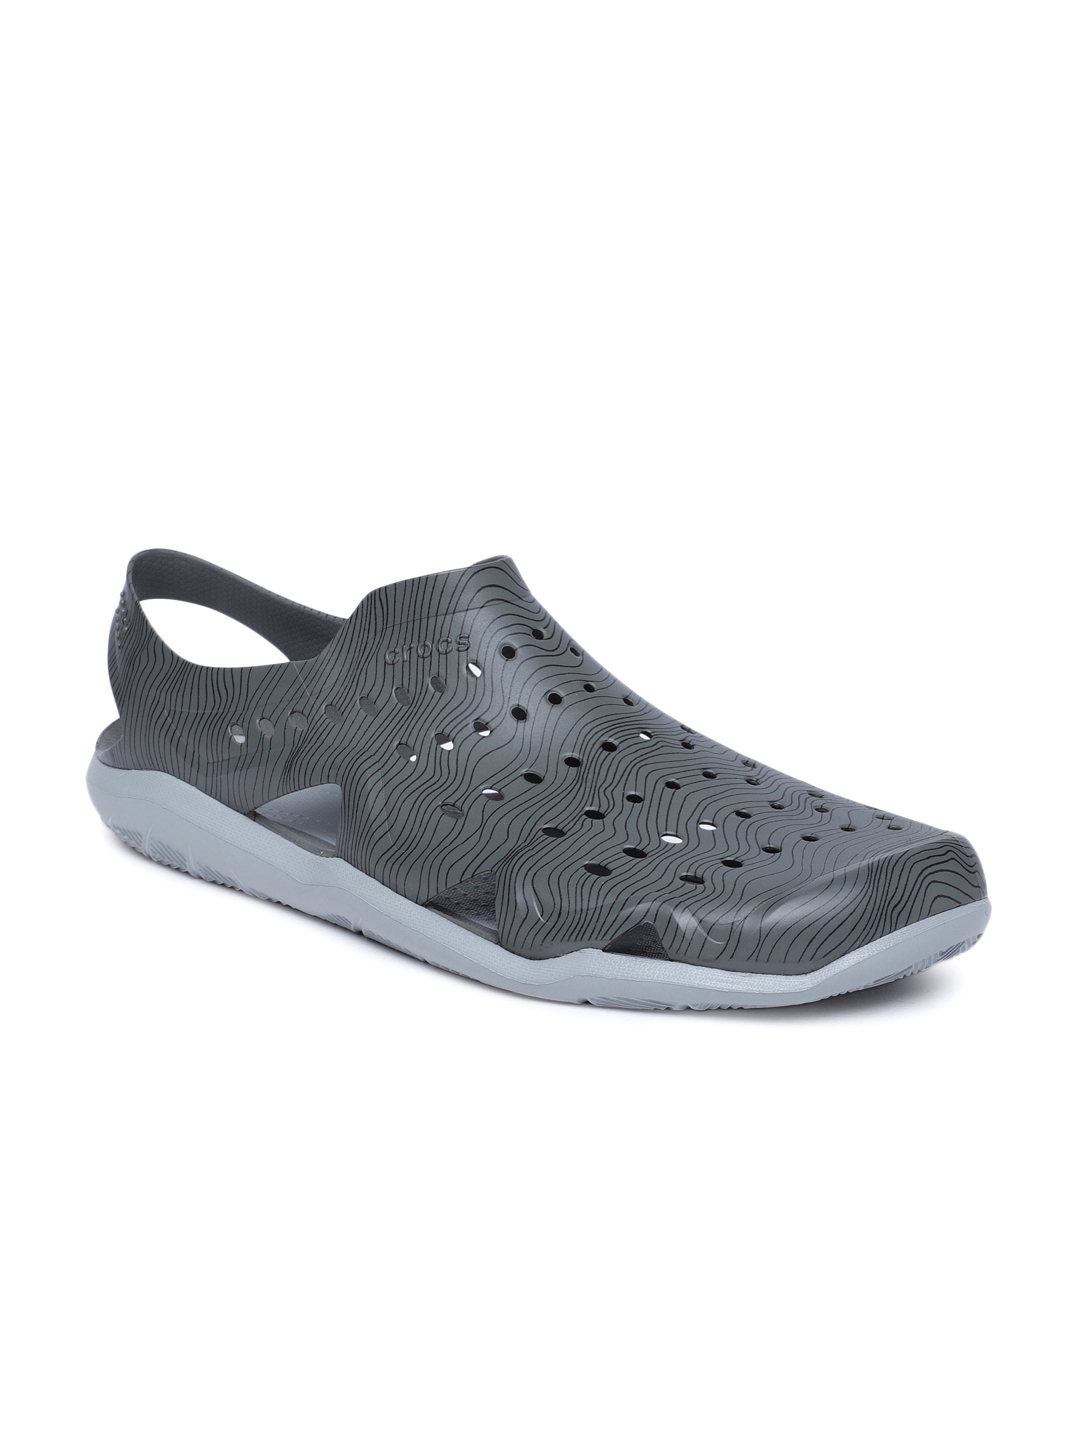 Buy Crocs Swiftwater Men Grey Clogs - Sandals for Men 8568727 | Myntra